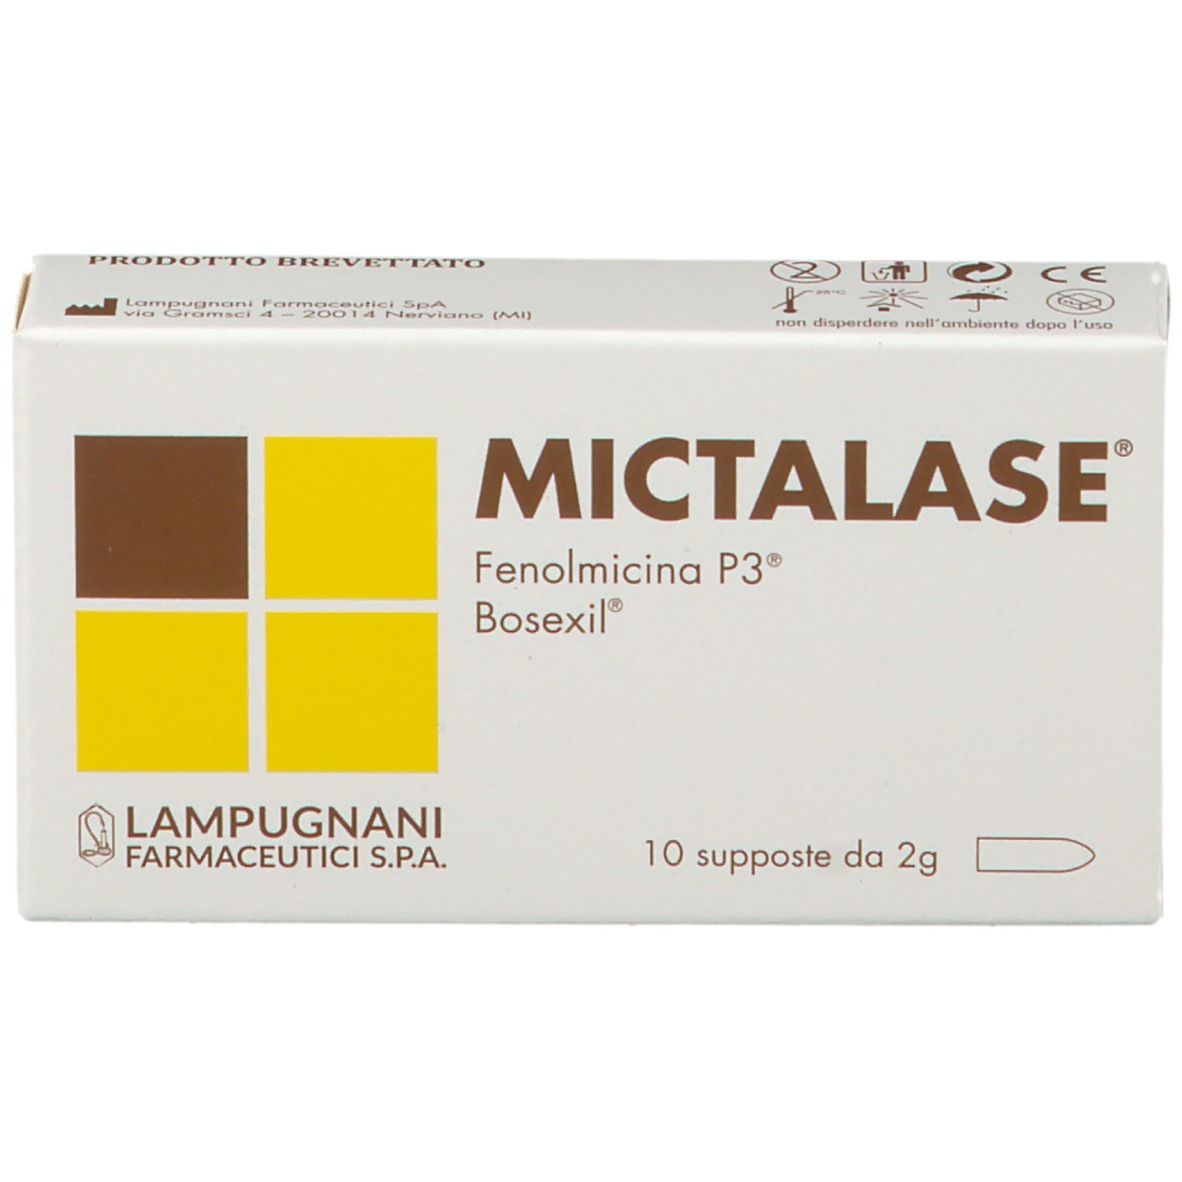 Mictalase®